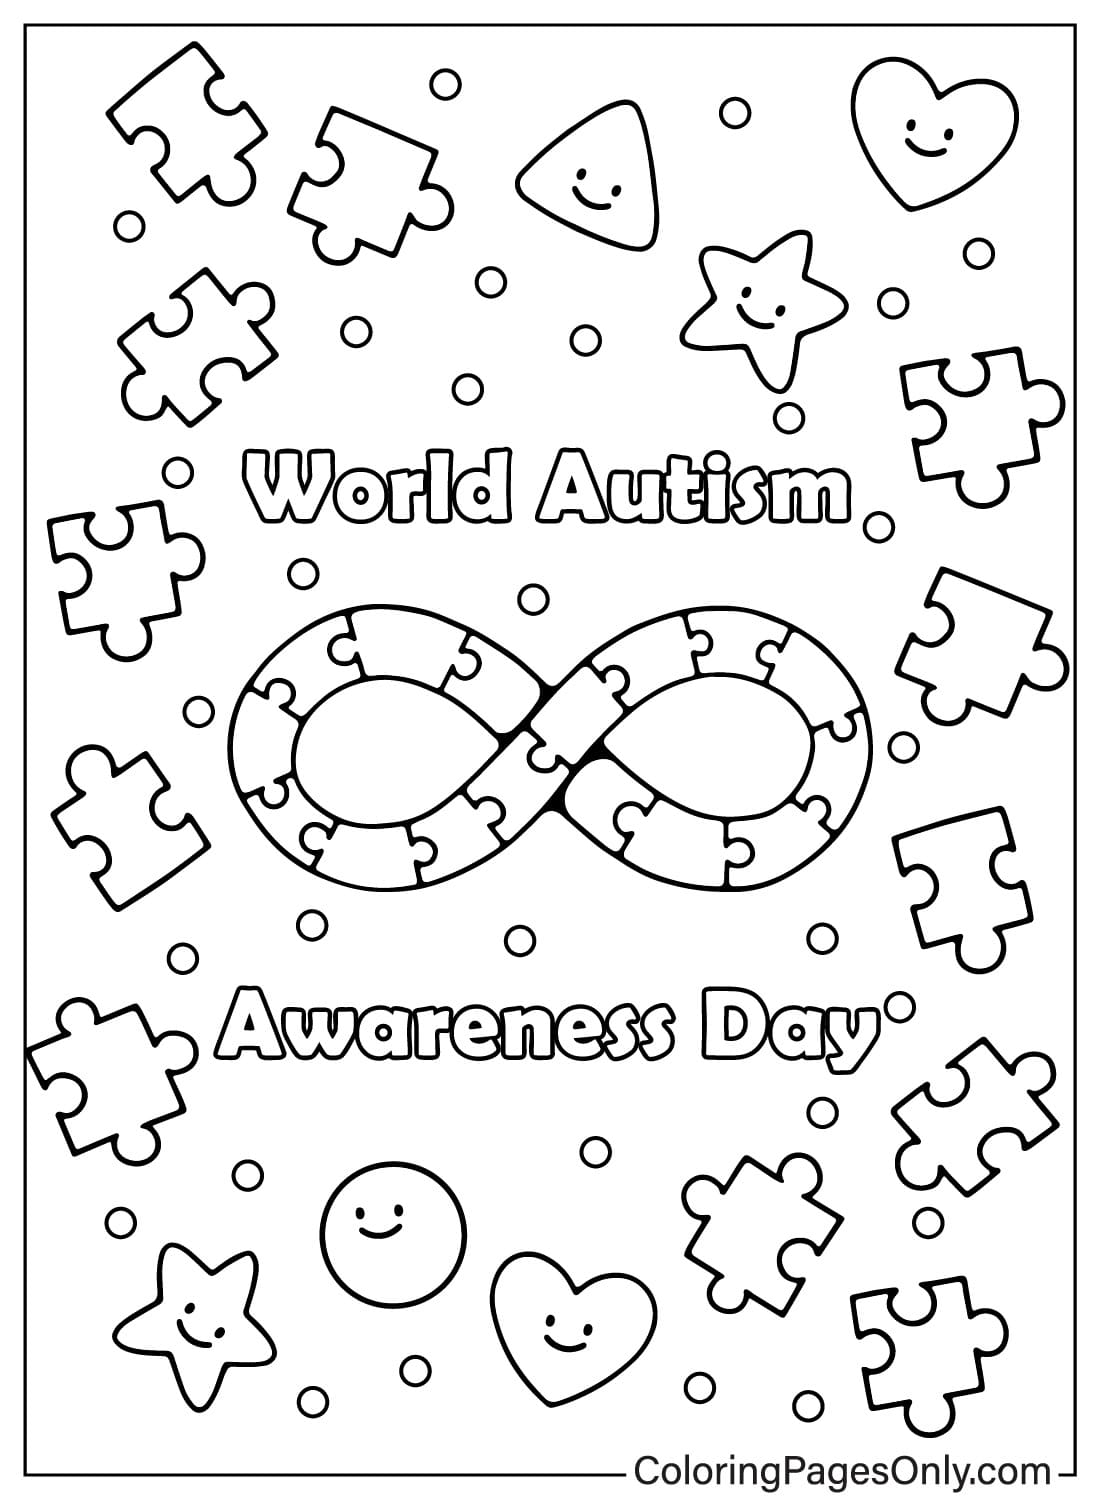 صفحات تلوين مجانية للتوعية بمرض التوحد للأطفال والكبار من اليوم العالمي للتوعية بمرض التوحد